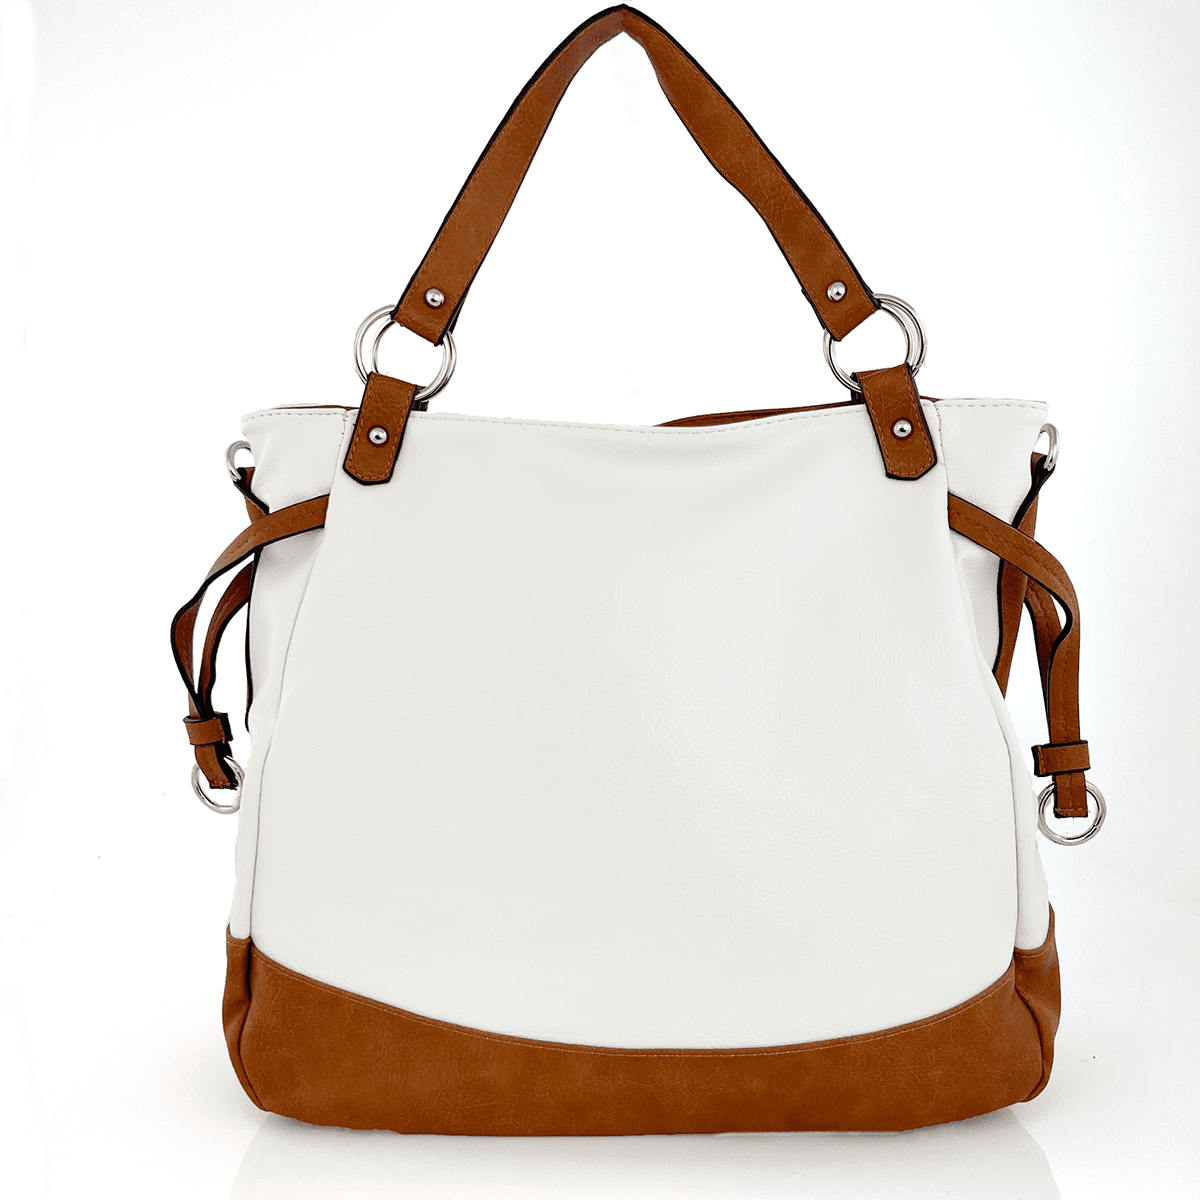 Голяма дамска чанта тип торба - бяло/керемидено кафяво